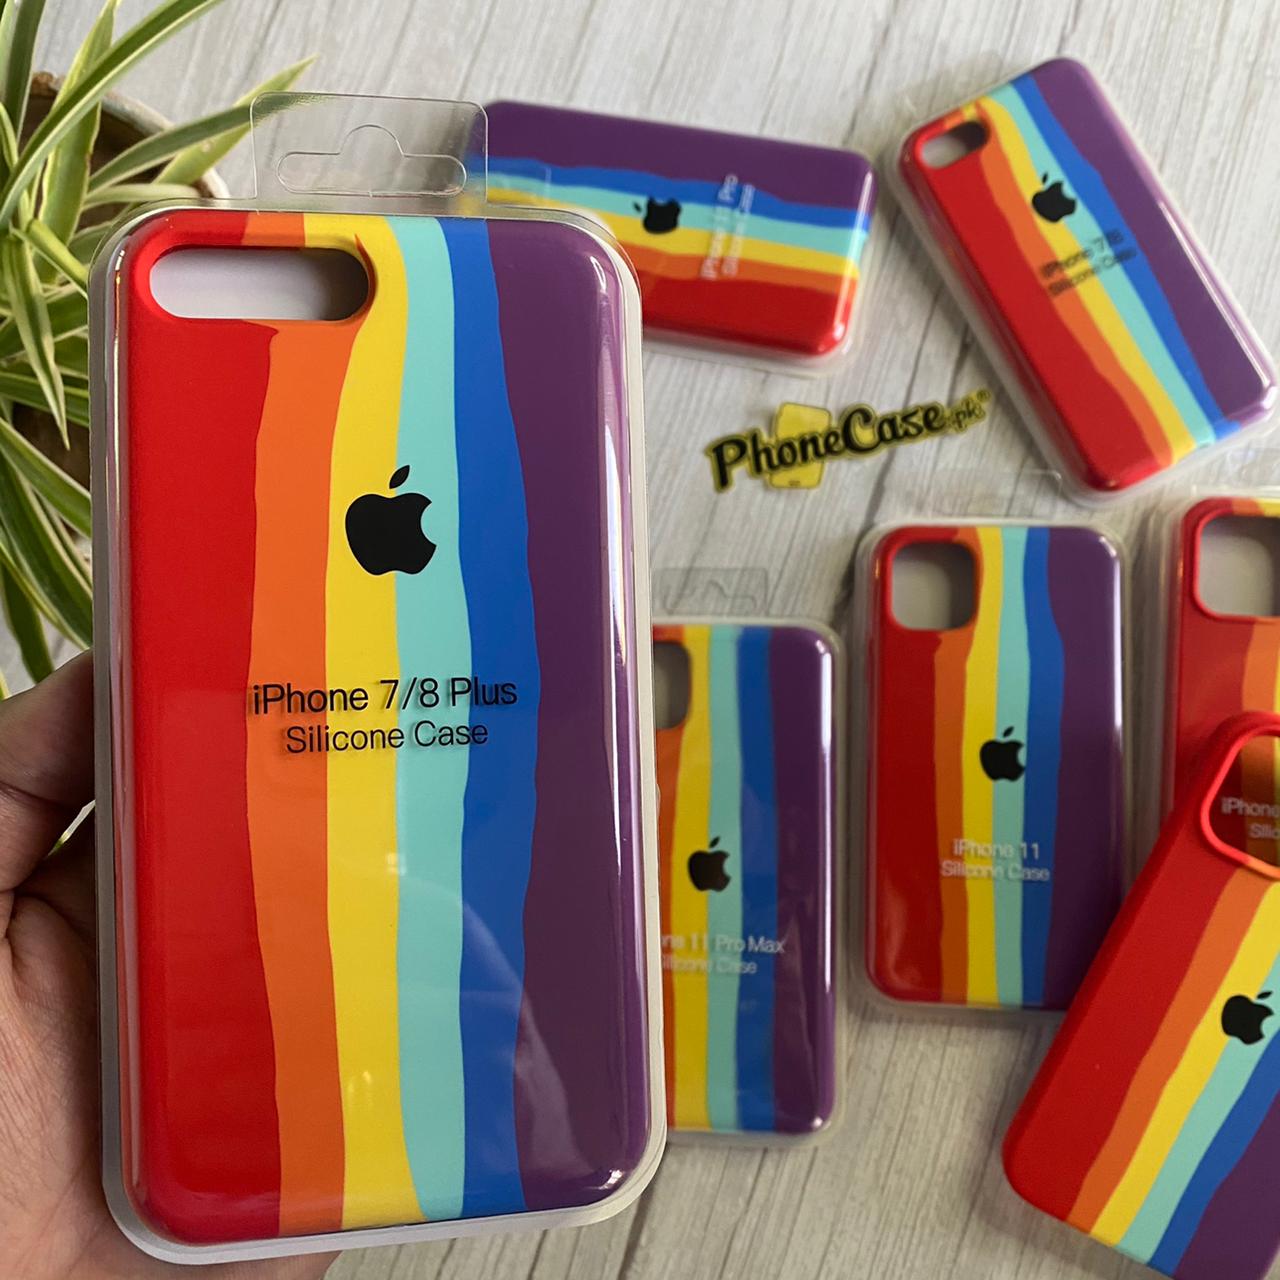 iPhone 6Plus/6sPlus official Rainbow Liquid silicon case